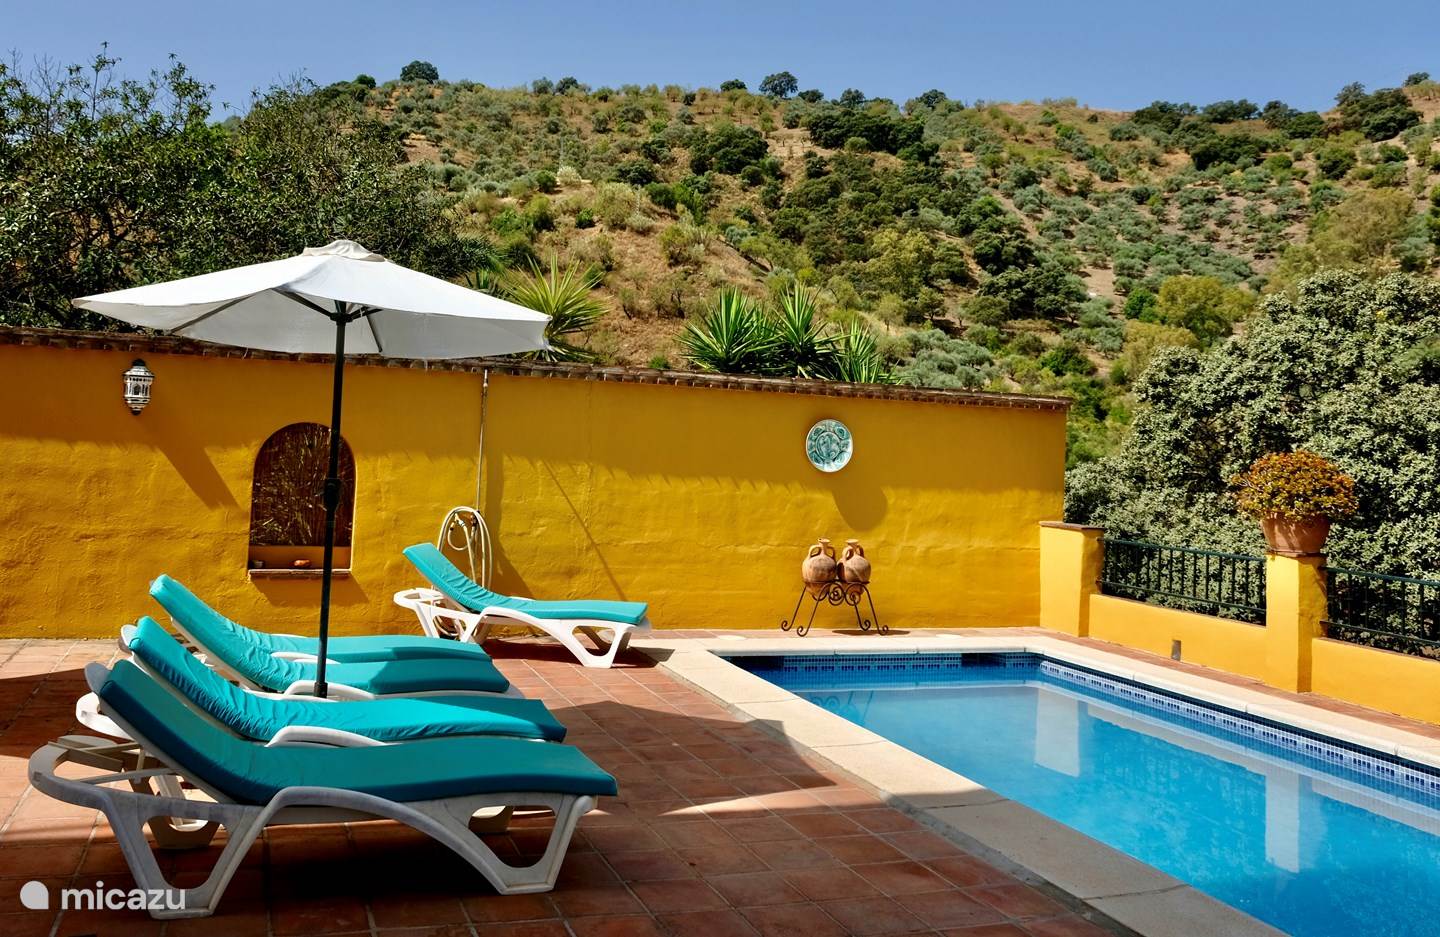 Rent　private　Lola.　in　Comares,　Villa　nature,　Sol.　Micazu　Peace,　Costa　pool　del